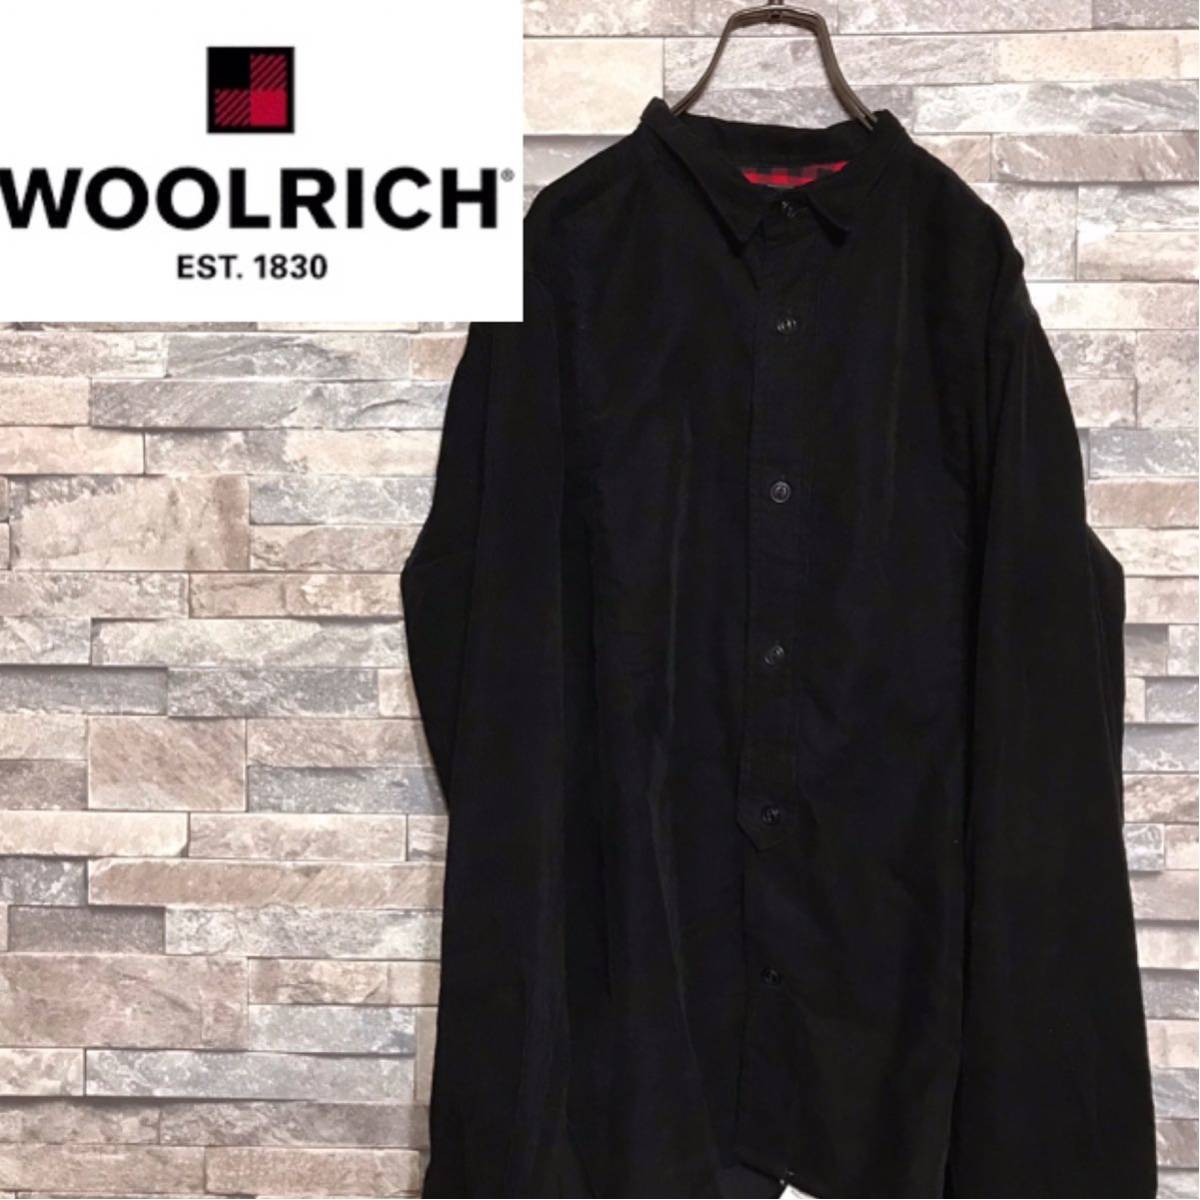 ★美品 woolrich woolen mills コーデュロイシャツ XS 黒★needles s2w8 ネペンテス Engineered Garment ウールリッチウーレンミルズ_画像1